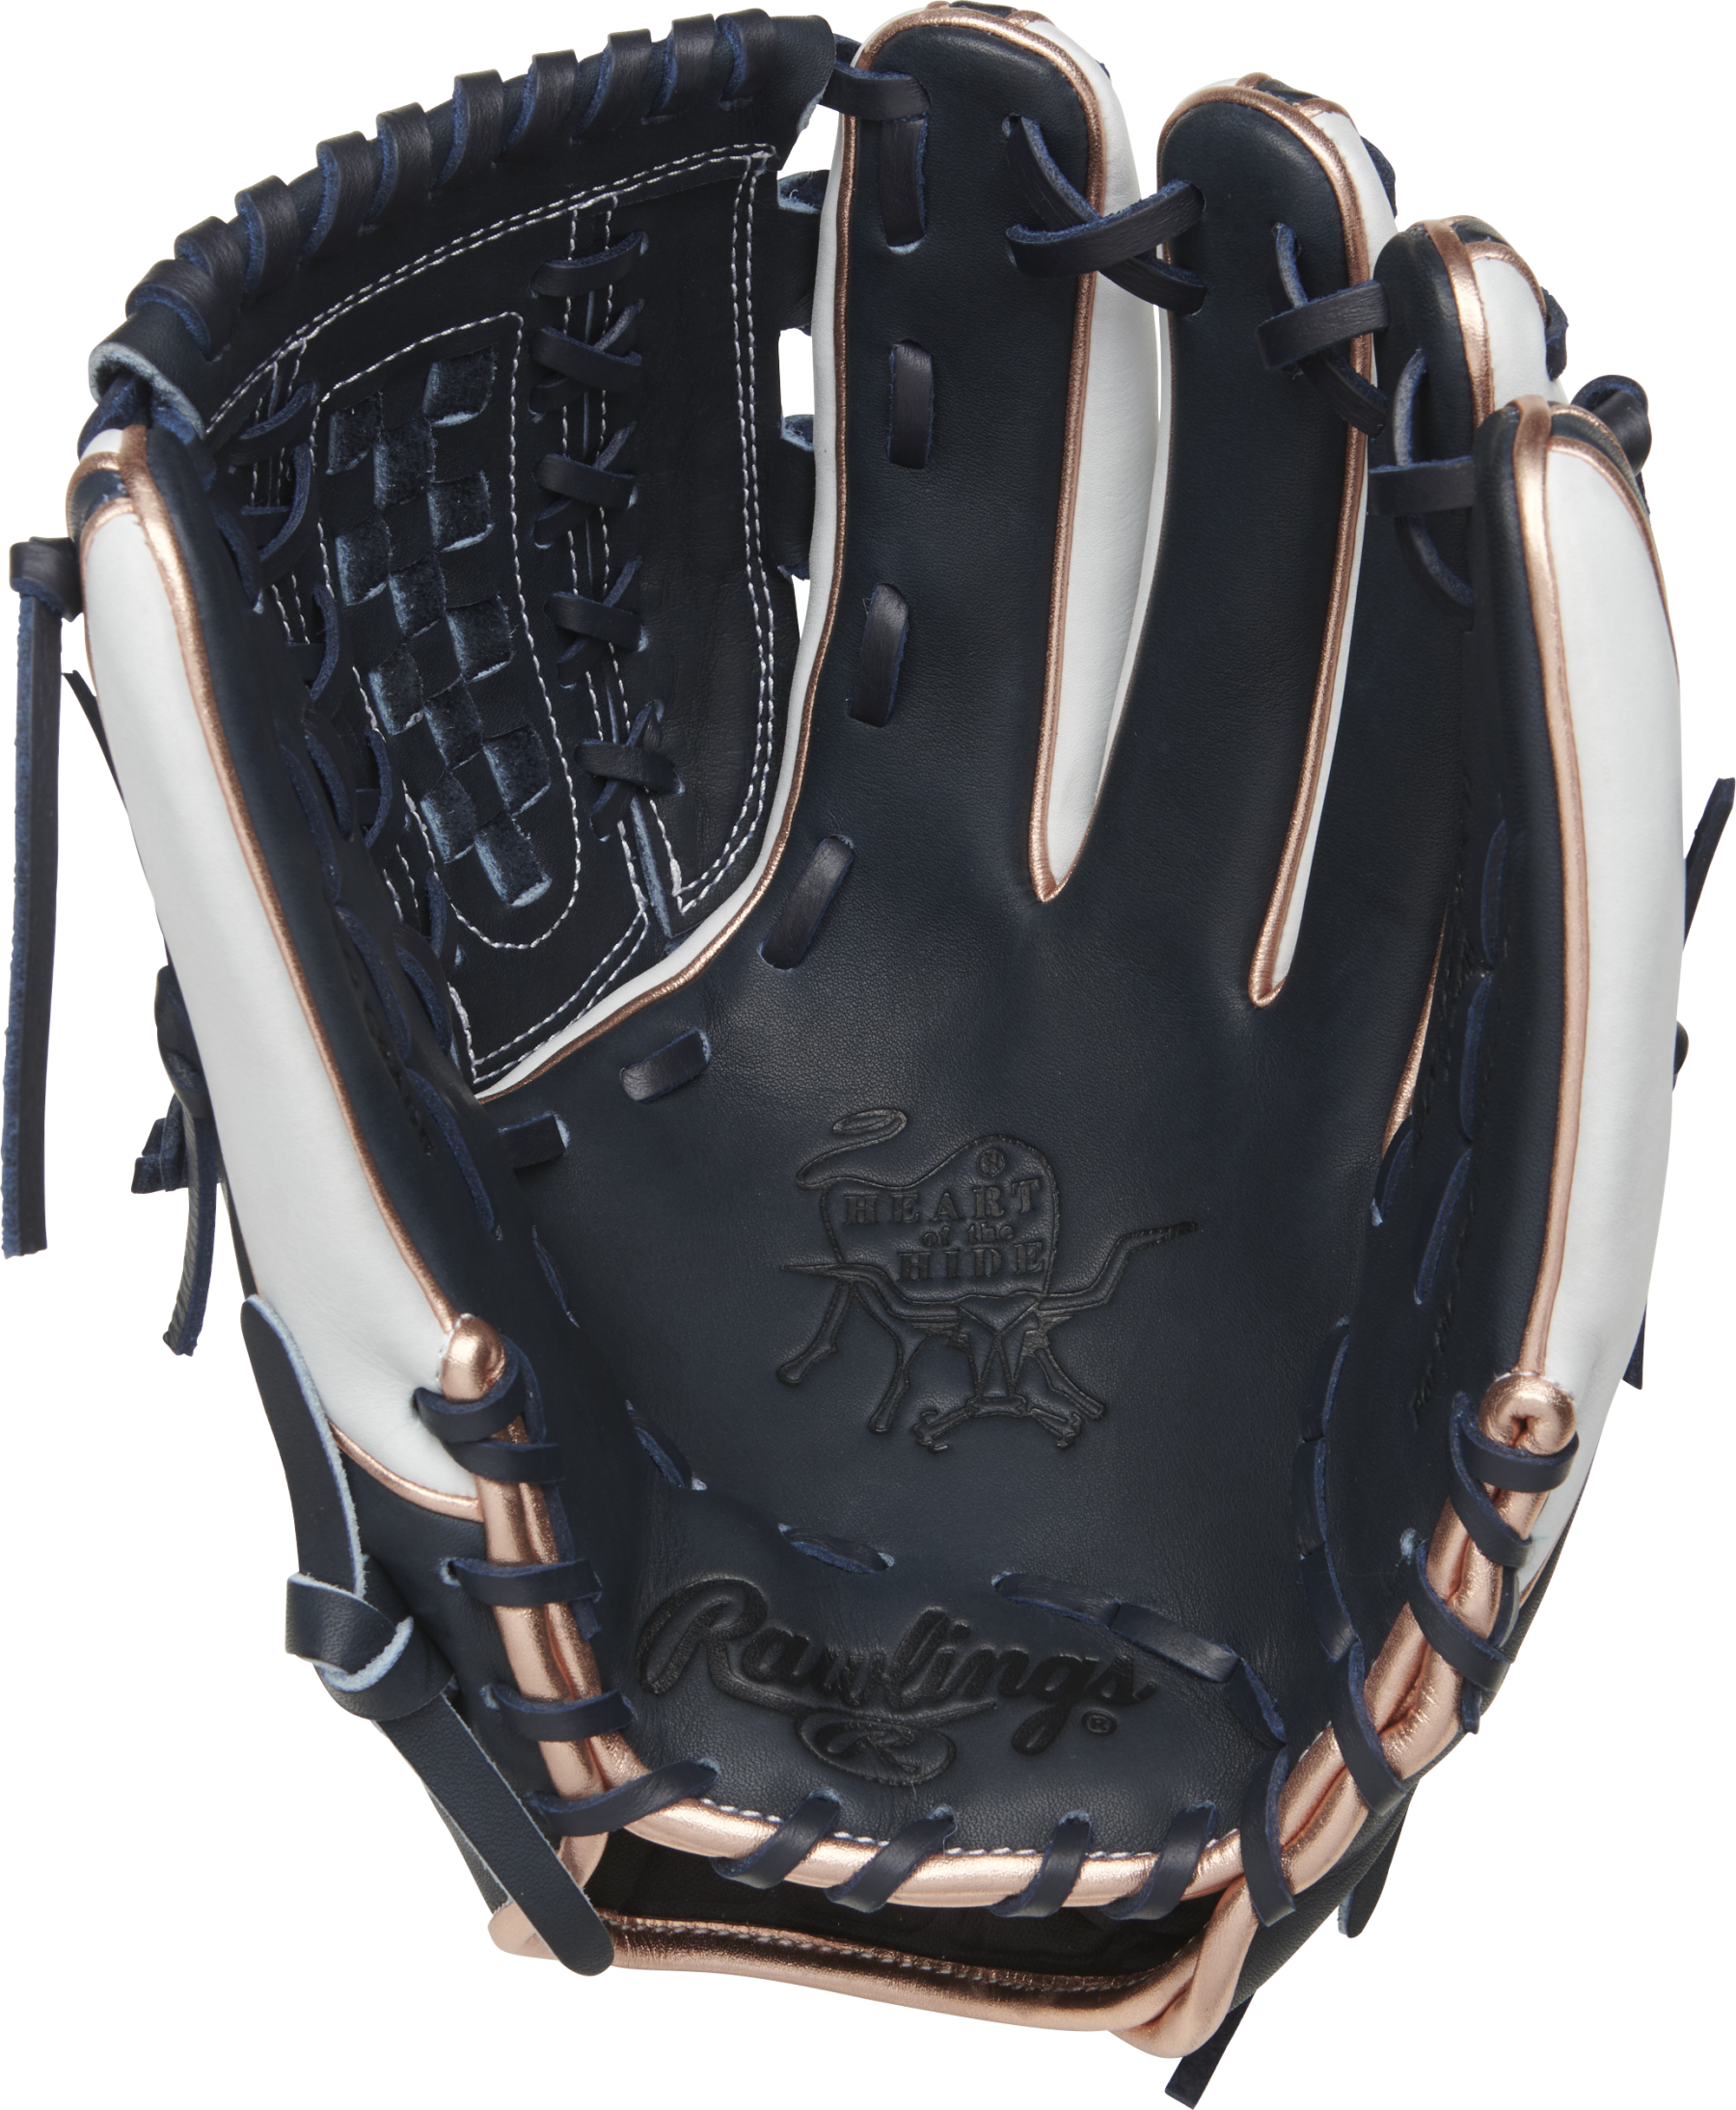 A Black And White Baseball Glove